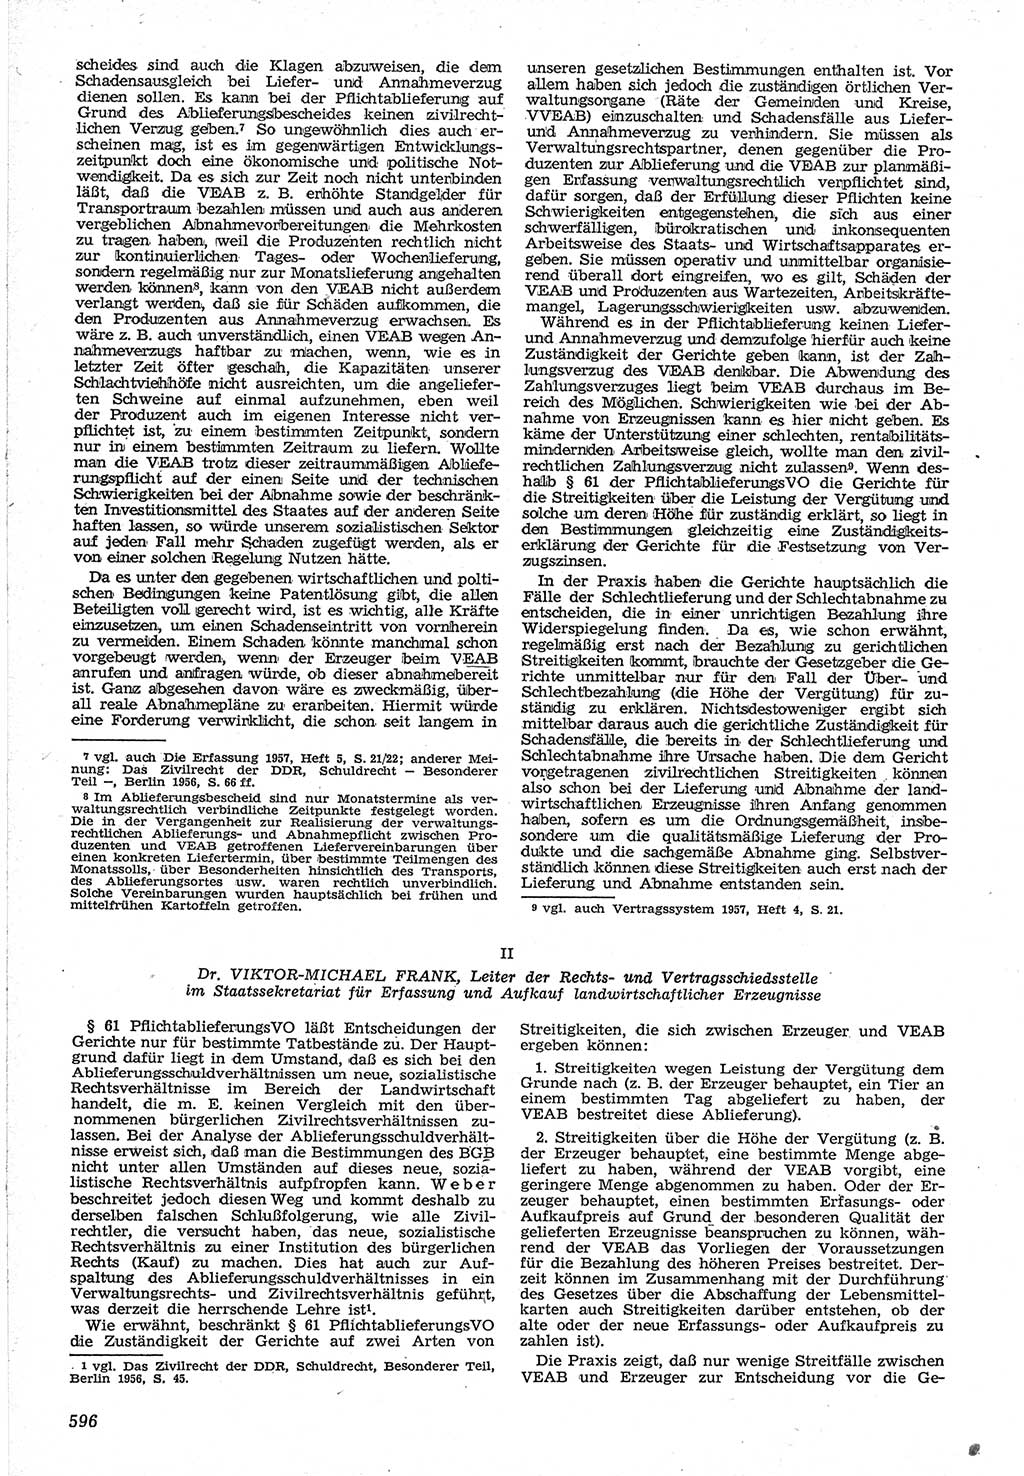 Neue Justiz (NJ), Zeitschrift für Recht und Rechtswissenschaft [Deutsche Demokratische Republik (DDR)], 12. Jahrgang 1958, Seite 596 (NJ DDR 1958, S. 596)